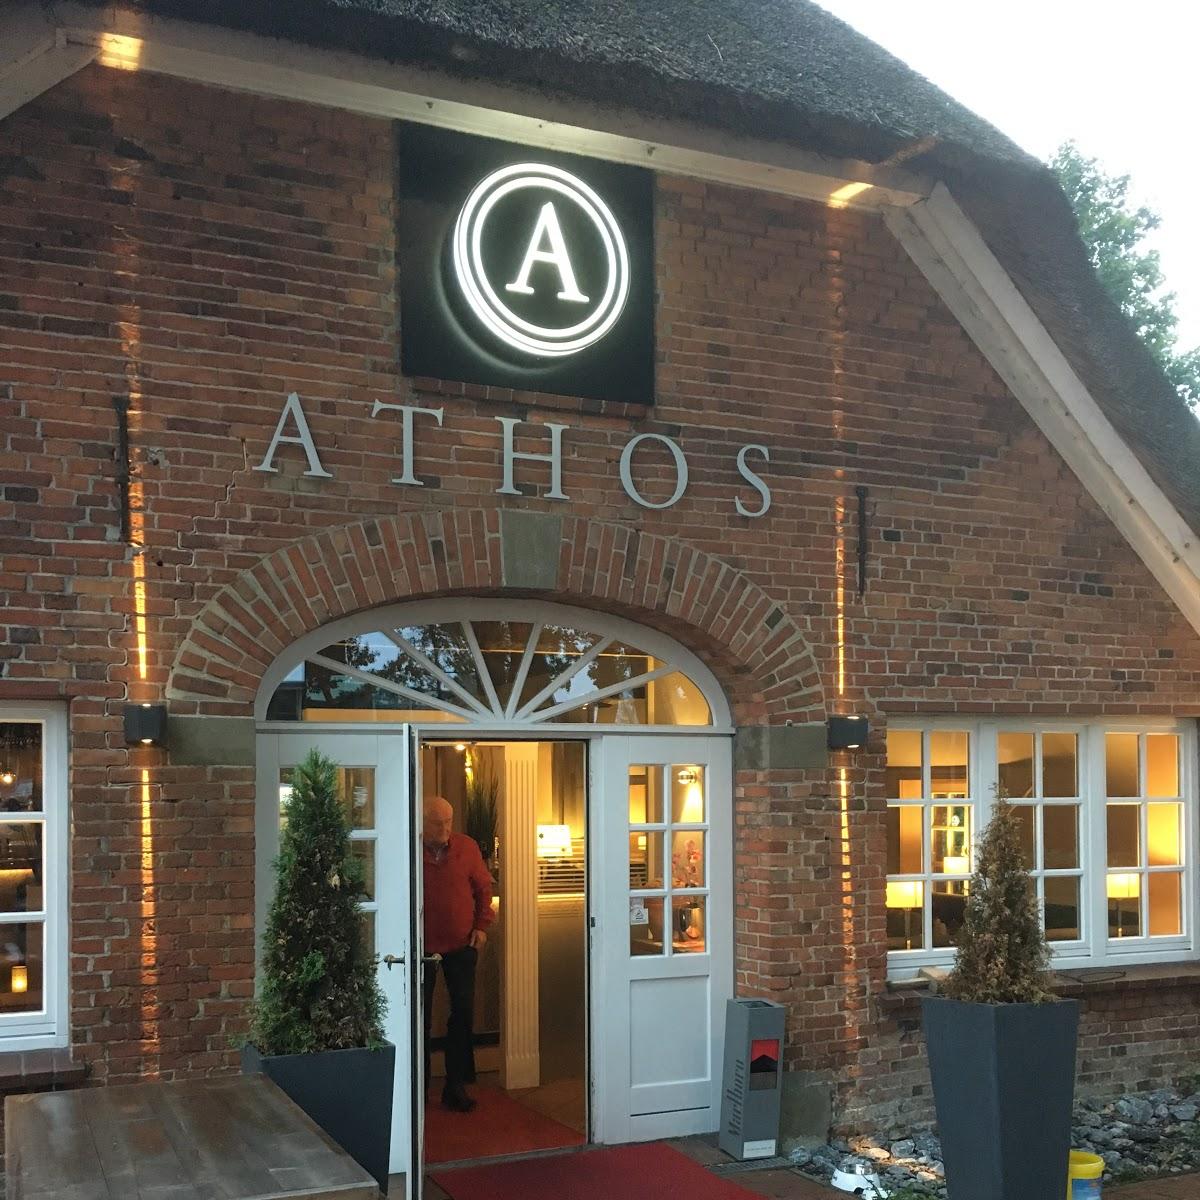 Restaurant "Restaurant Athos" in  Oldenburg